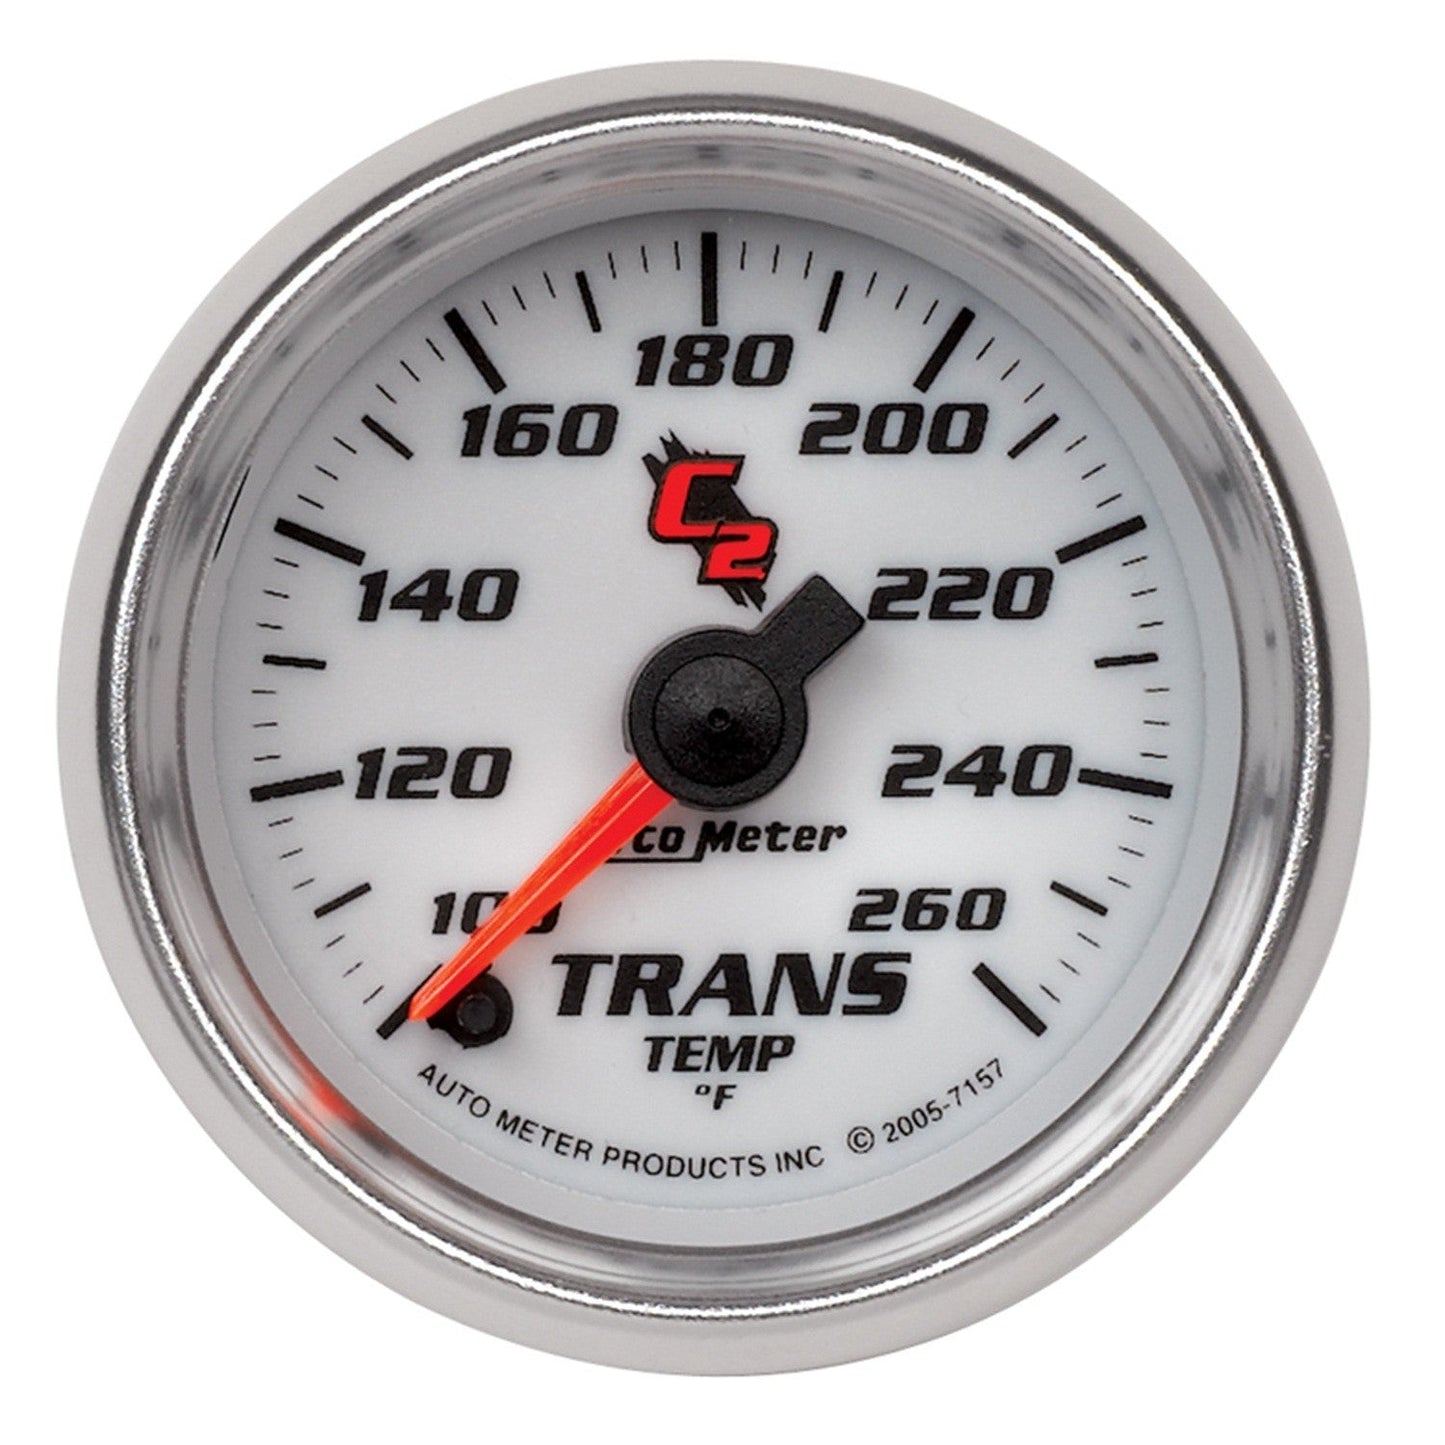 AutoMeter - TEMPERATURA DE TRANSMISIÓN DE 2-1/16", 100-260 °F, MOTOR PASO A PASO, C2 (7157)